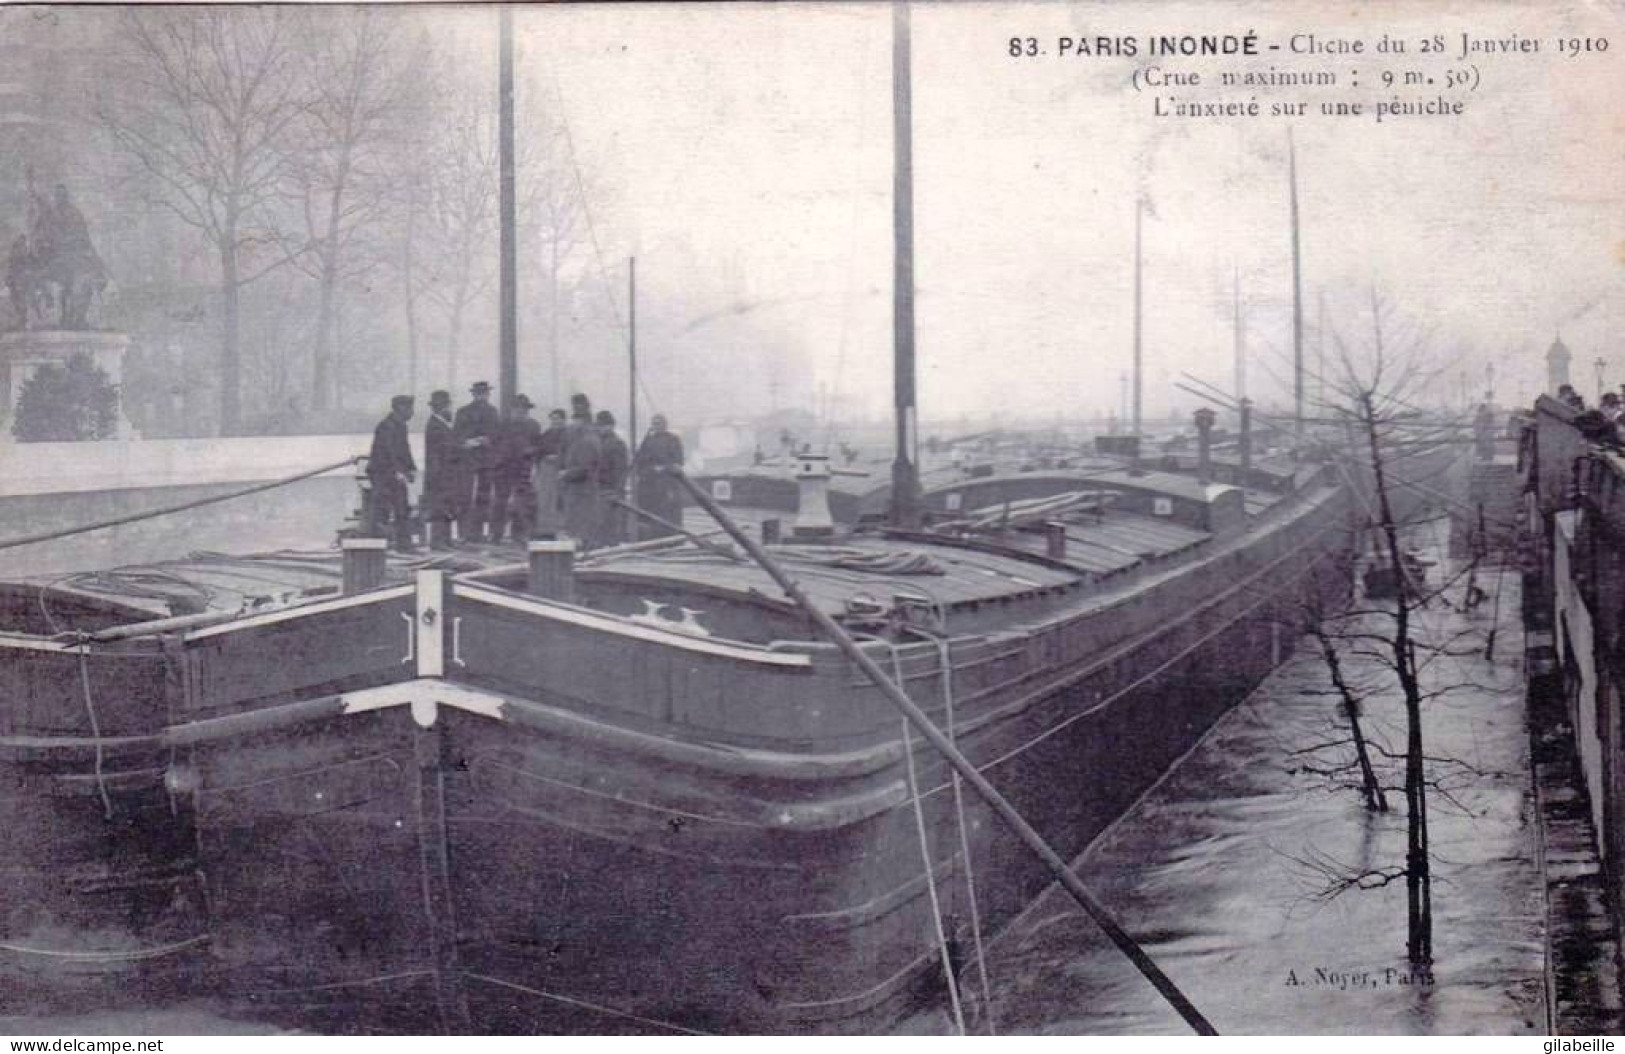 75 - PARIS Inondé - L Anxiété Sur Une Péniche - Le 28 Janvier 1910 - Inondations De 1910